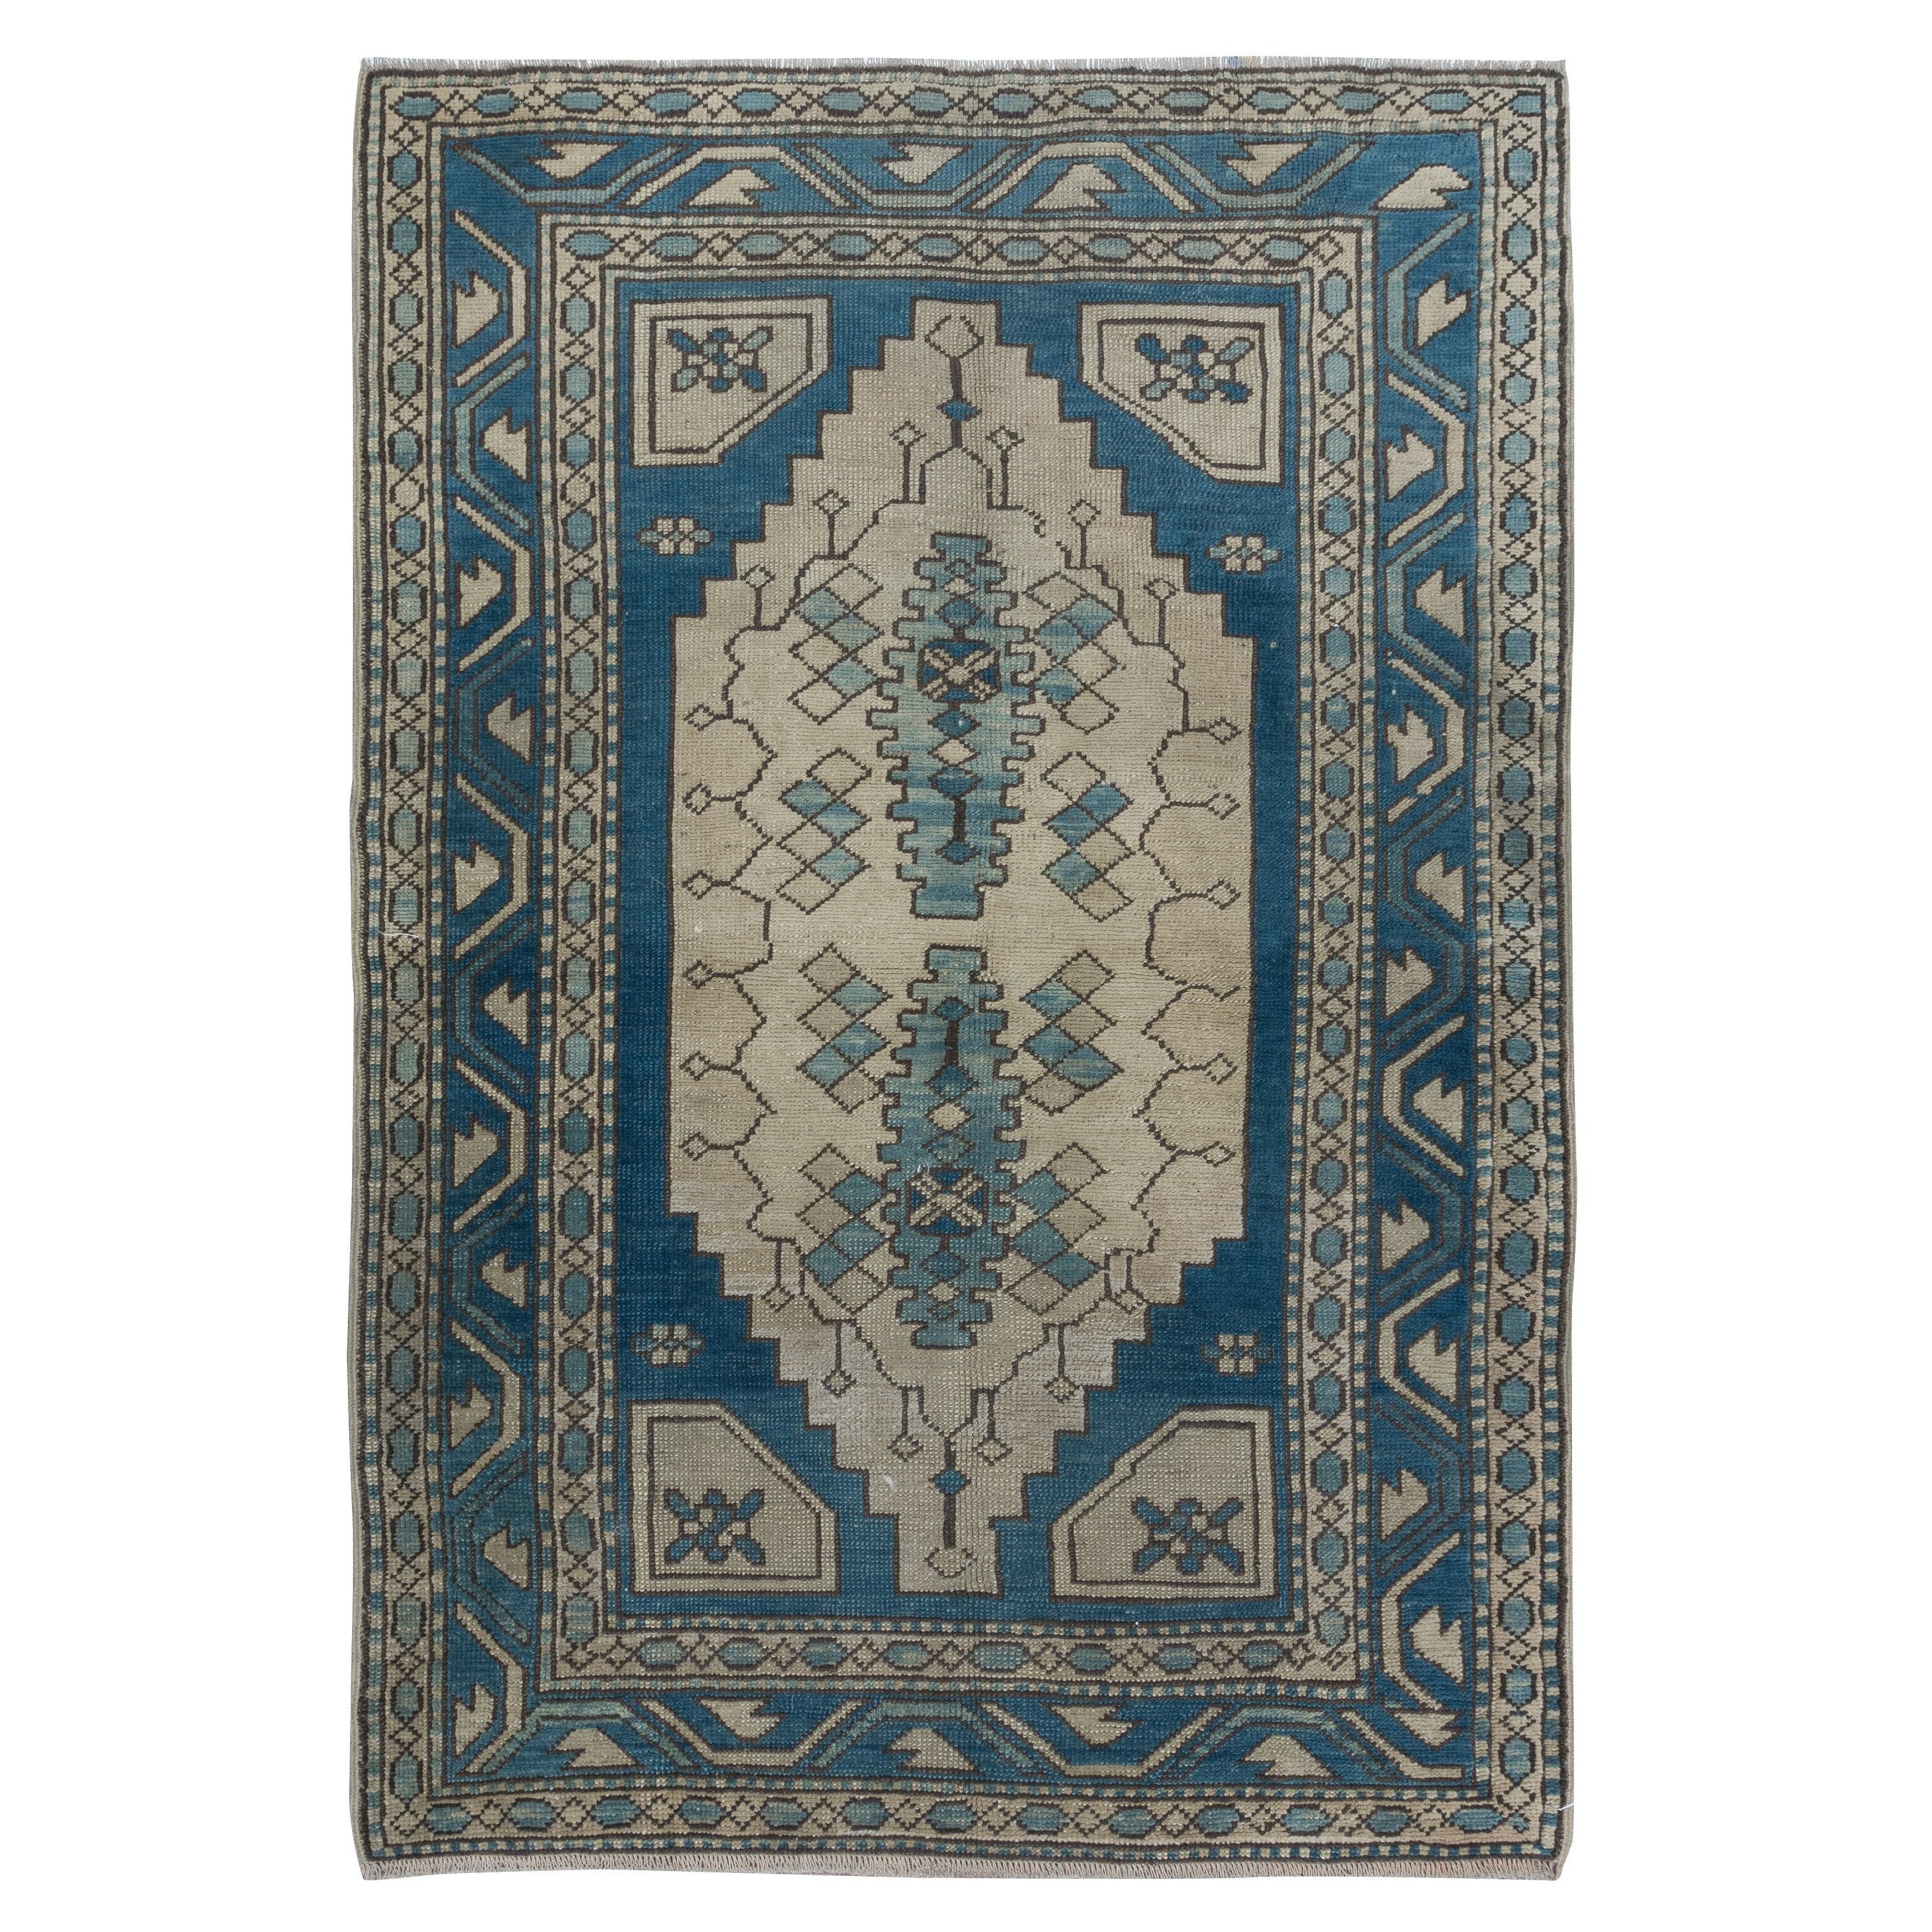 4x6 Ft Vintage Turkish Rug in Dark Blue & Beige, Handmade Wool Village Carpet